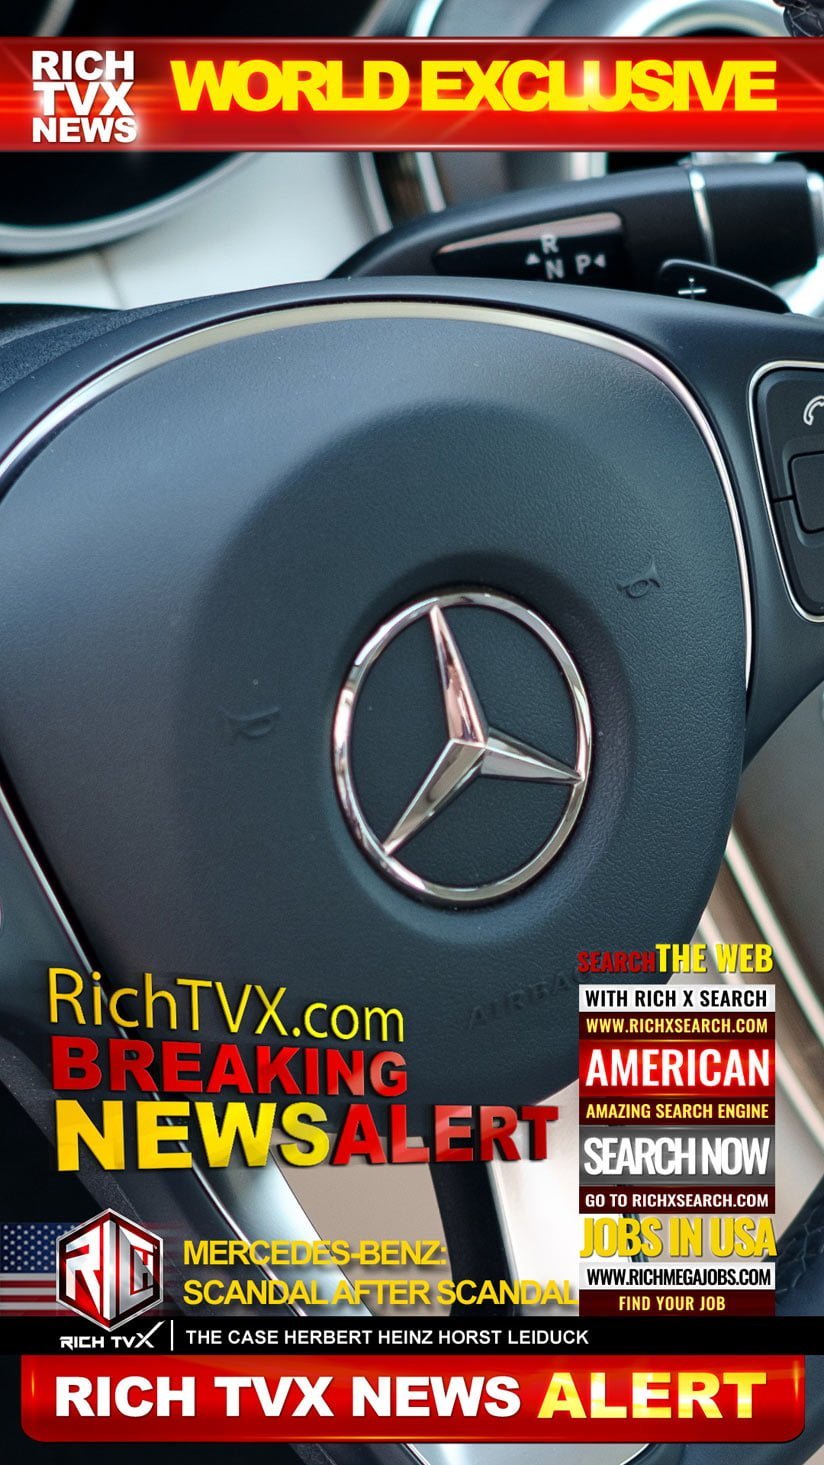 Mercedes-Benz: Scandal After Scandal